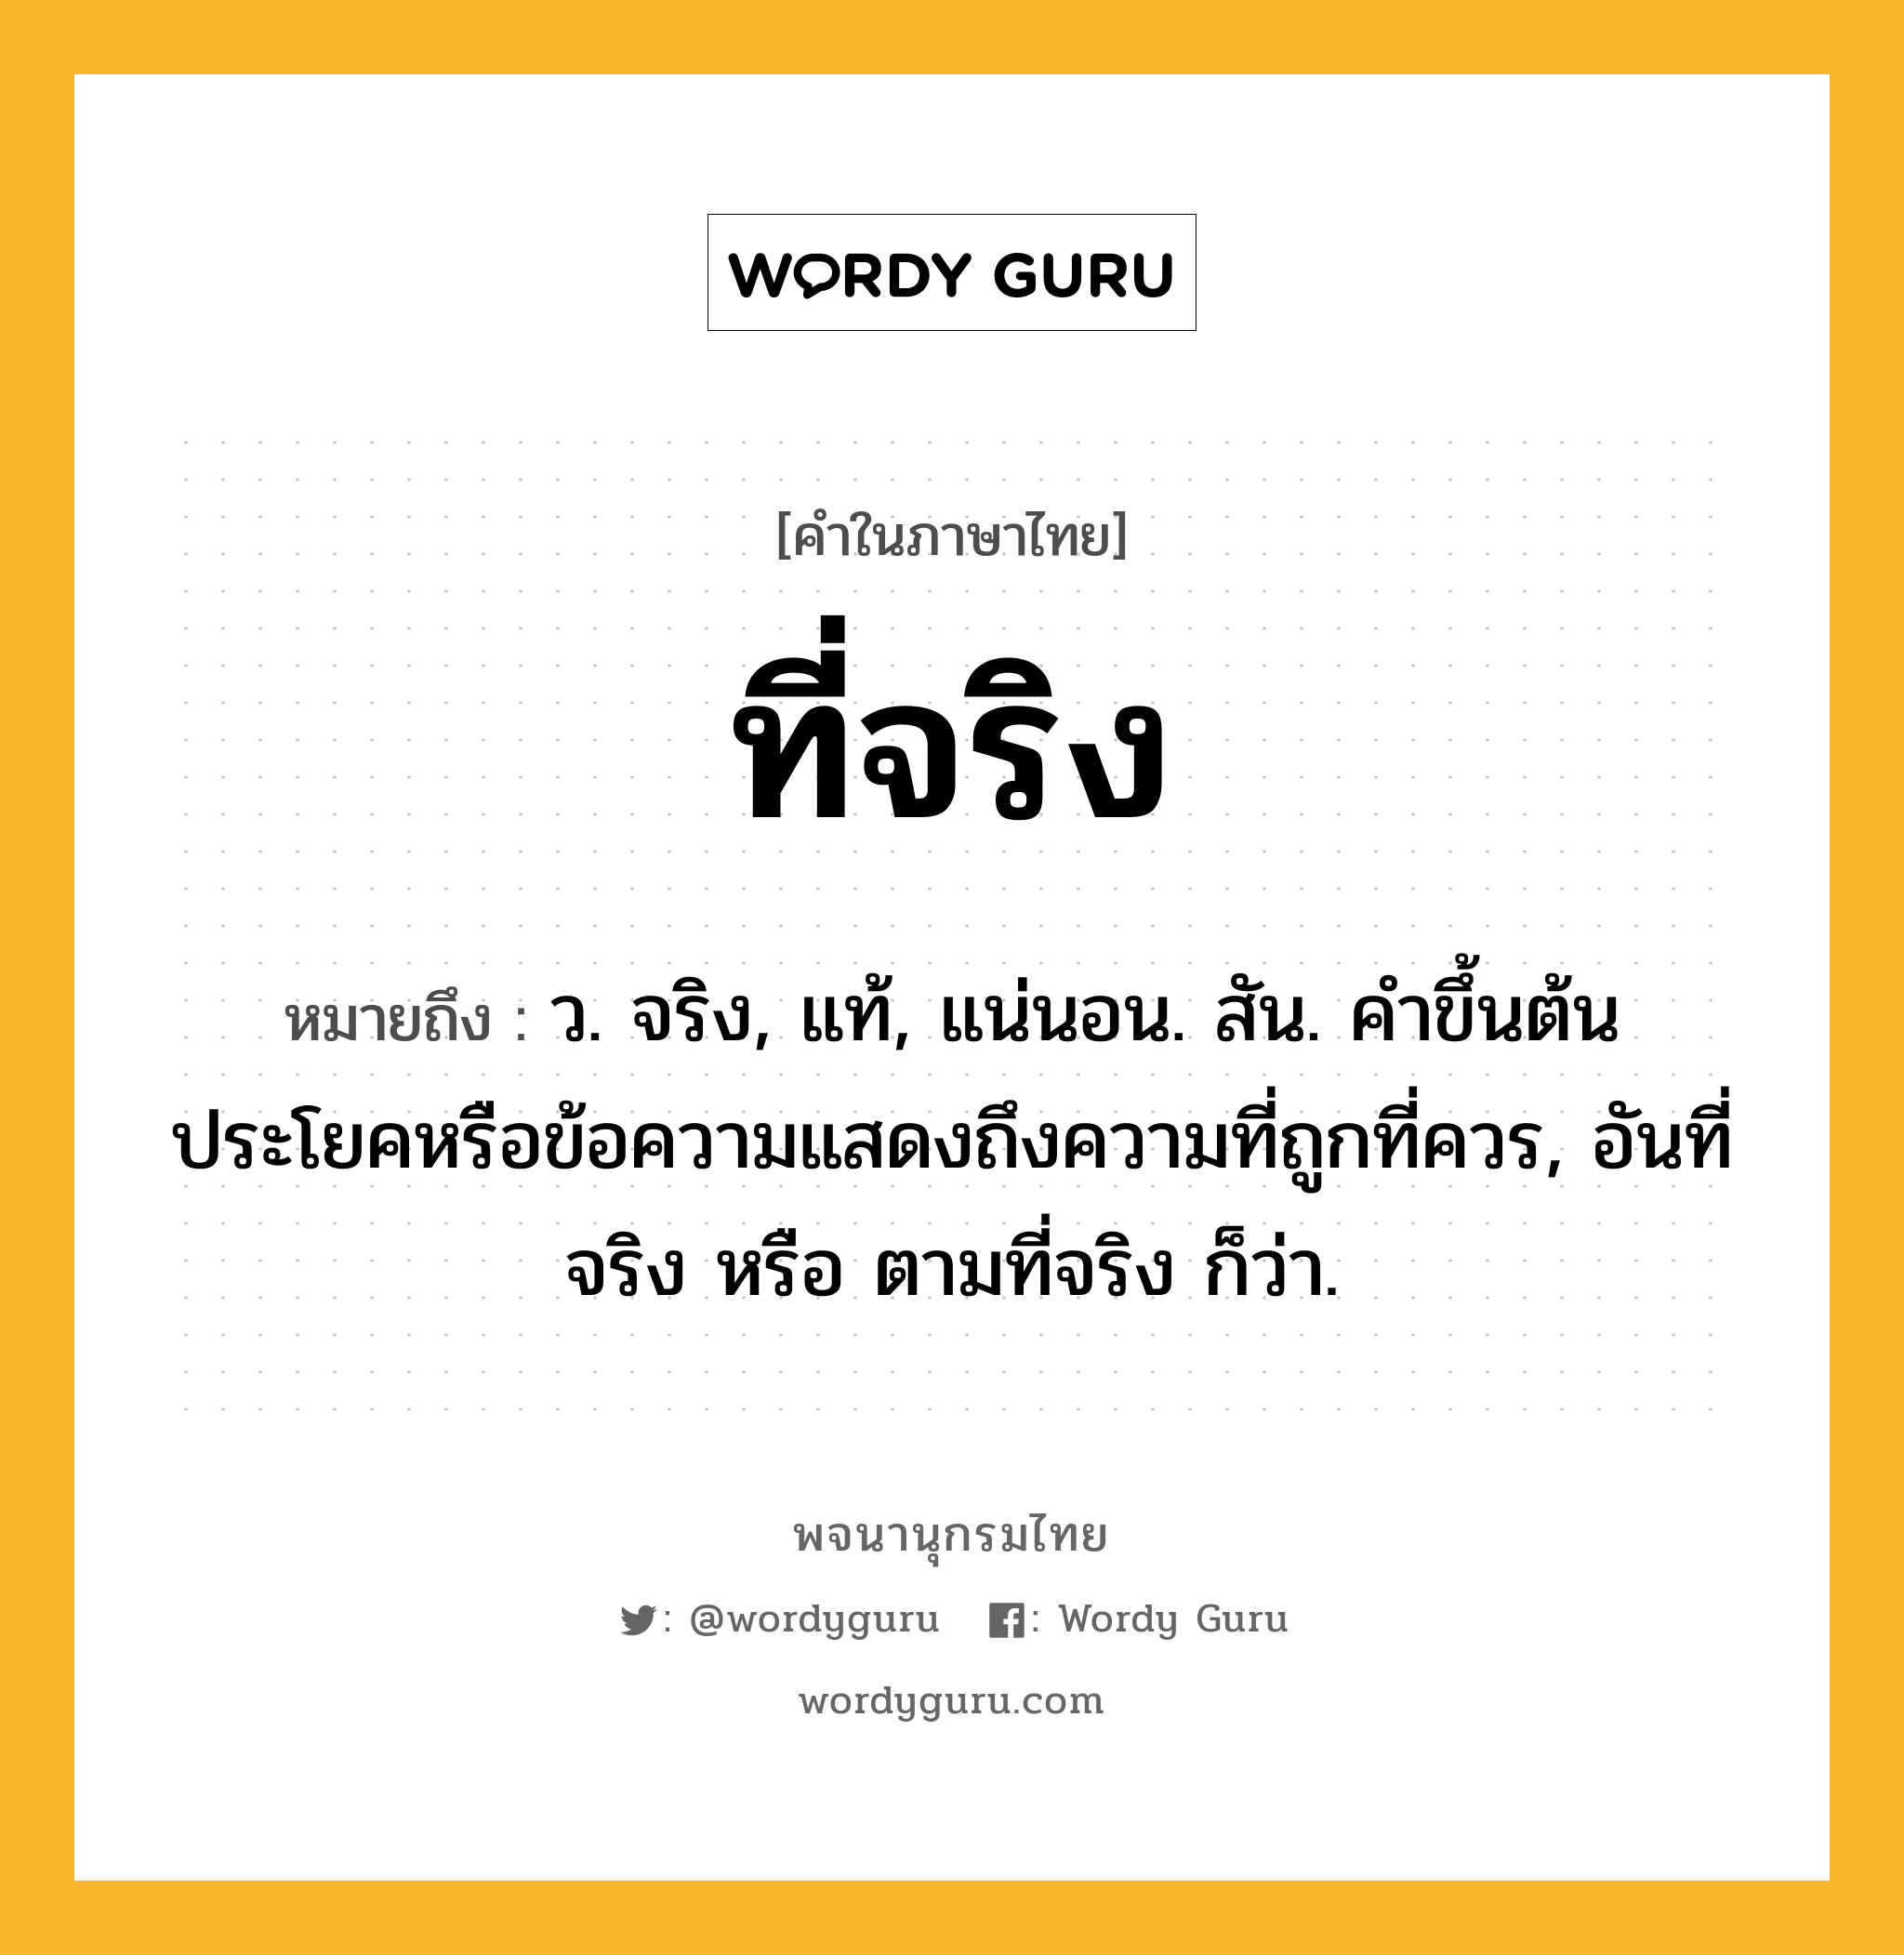 ที่จริง หมายถึงอะไร?, คำในภาษาไทย ที่จริง หมายถึง ว. จริง, แท้, แน่นอน. สัน. คําขึ้นต้นประโยคหรือข้อความแสดงถึงความที่ถูกที่ควร, อันที่จริง หรือ ตามที่จริง ก็ว่า.